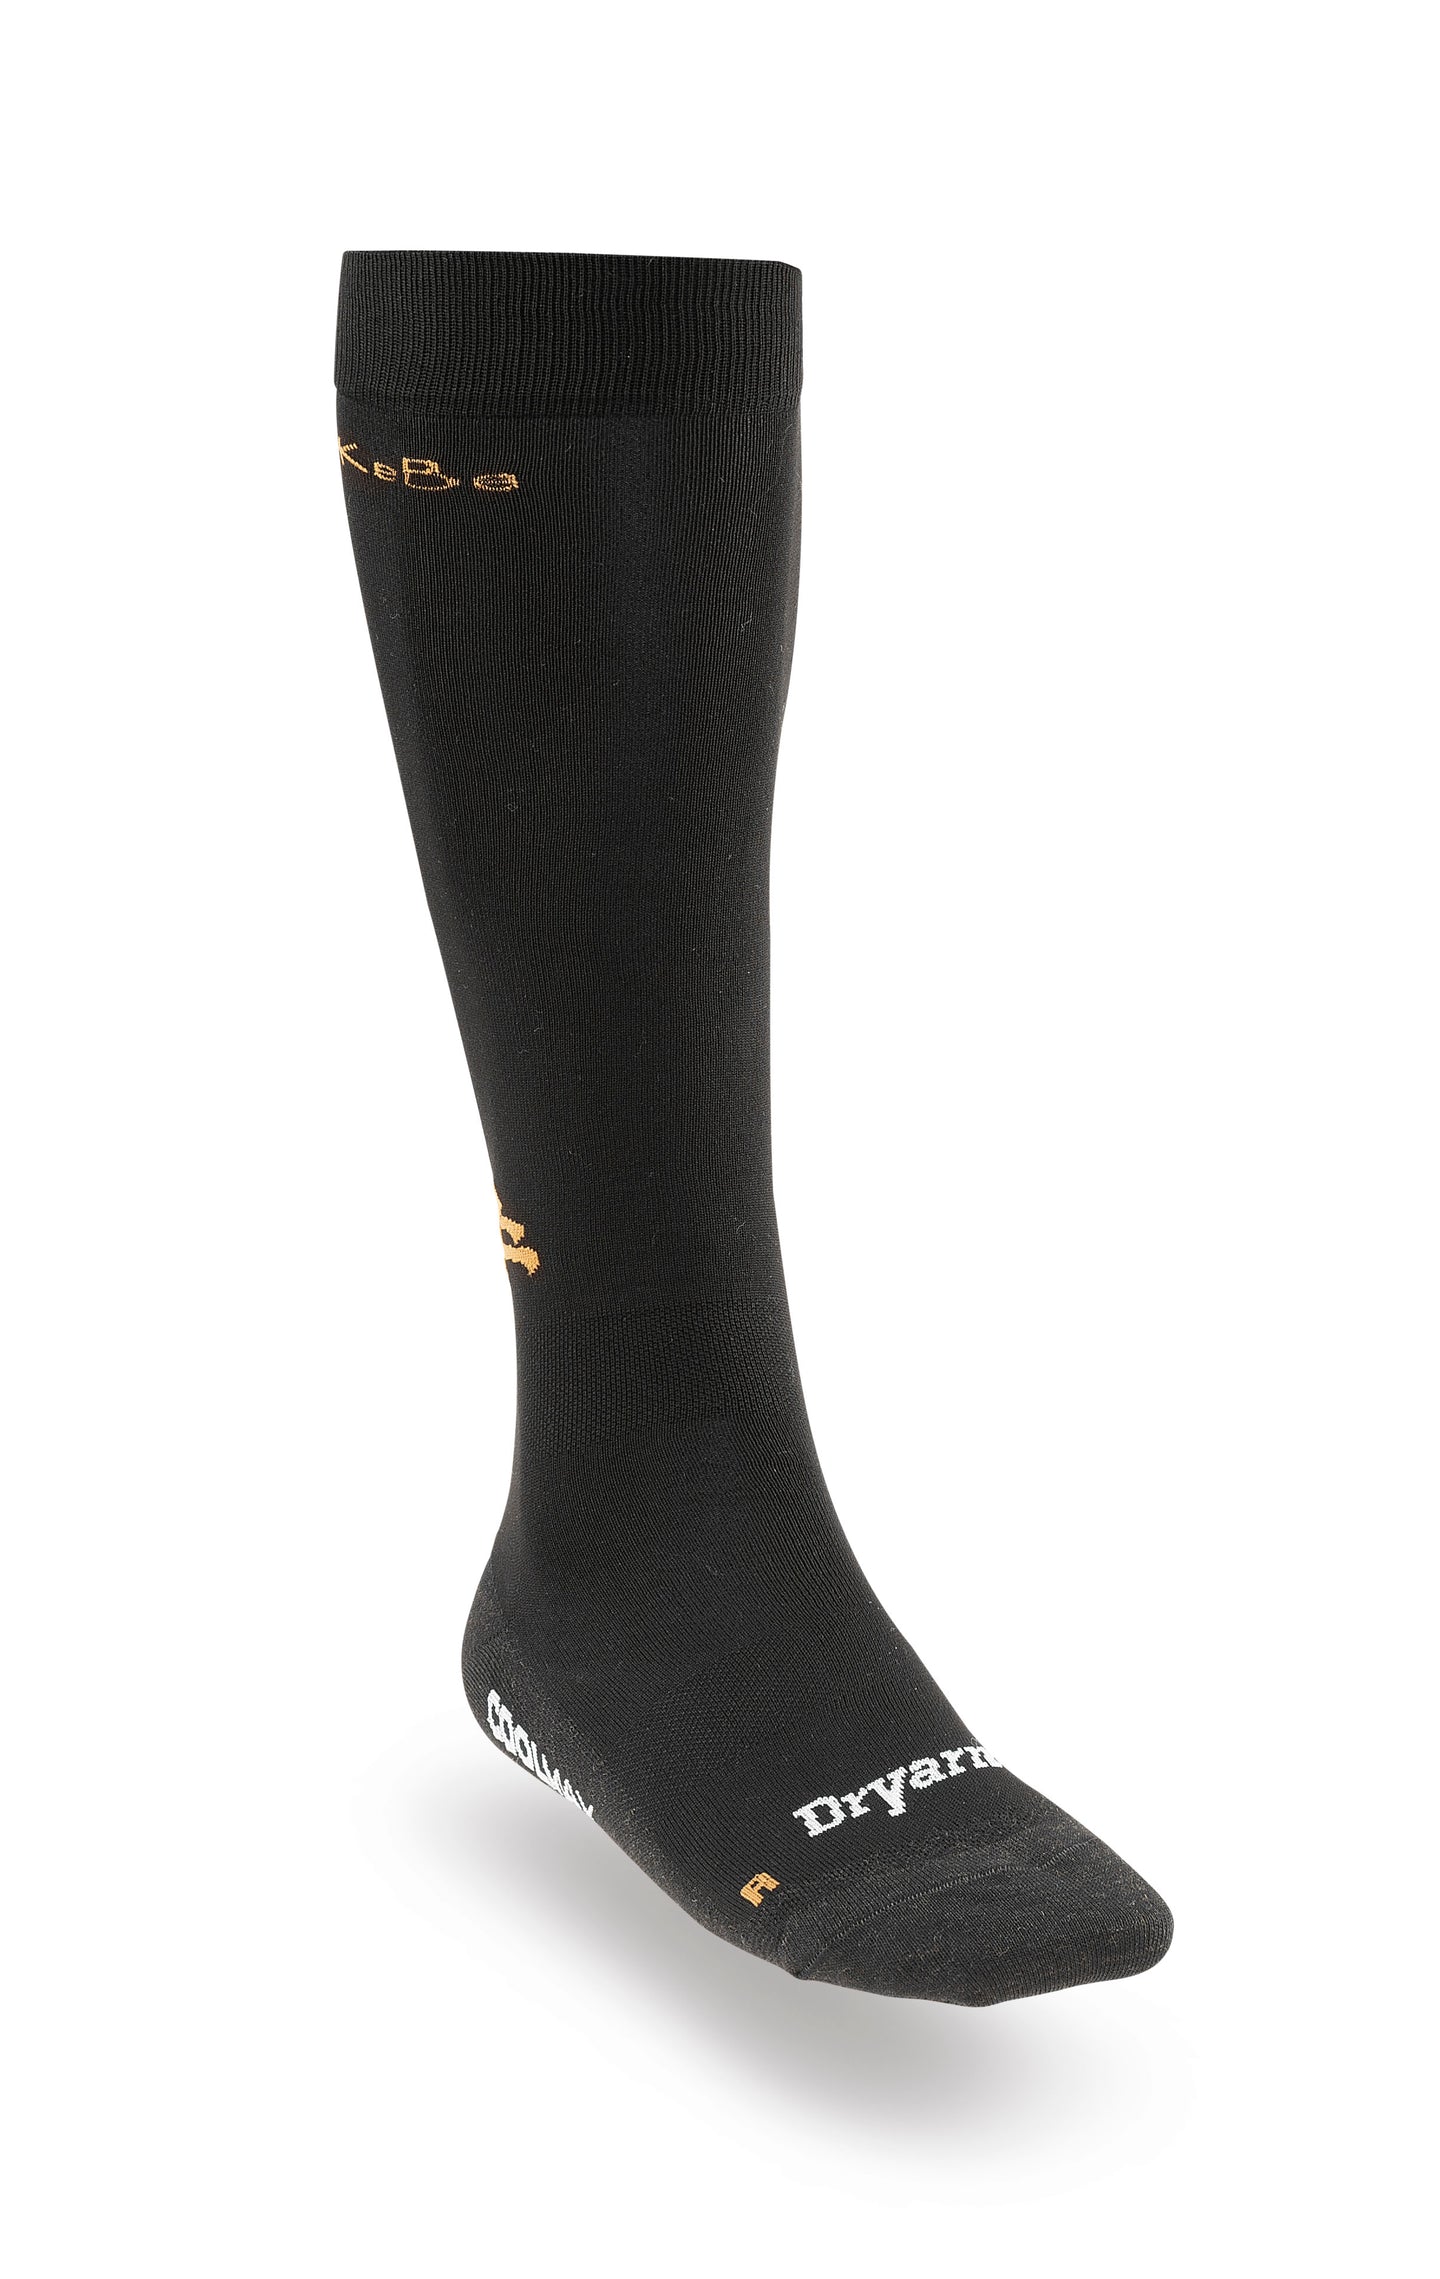 Pro Rider socks Collmax Xstatic and Dryarn